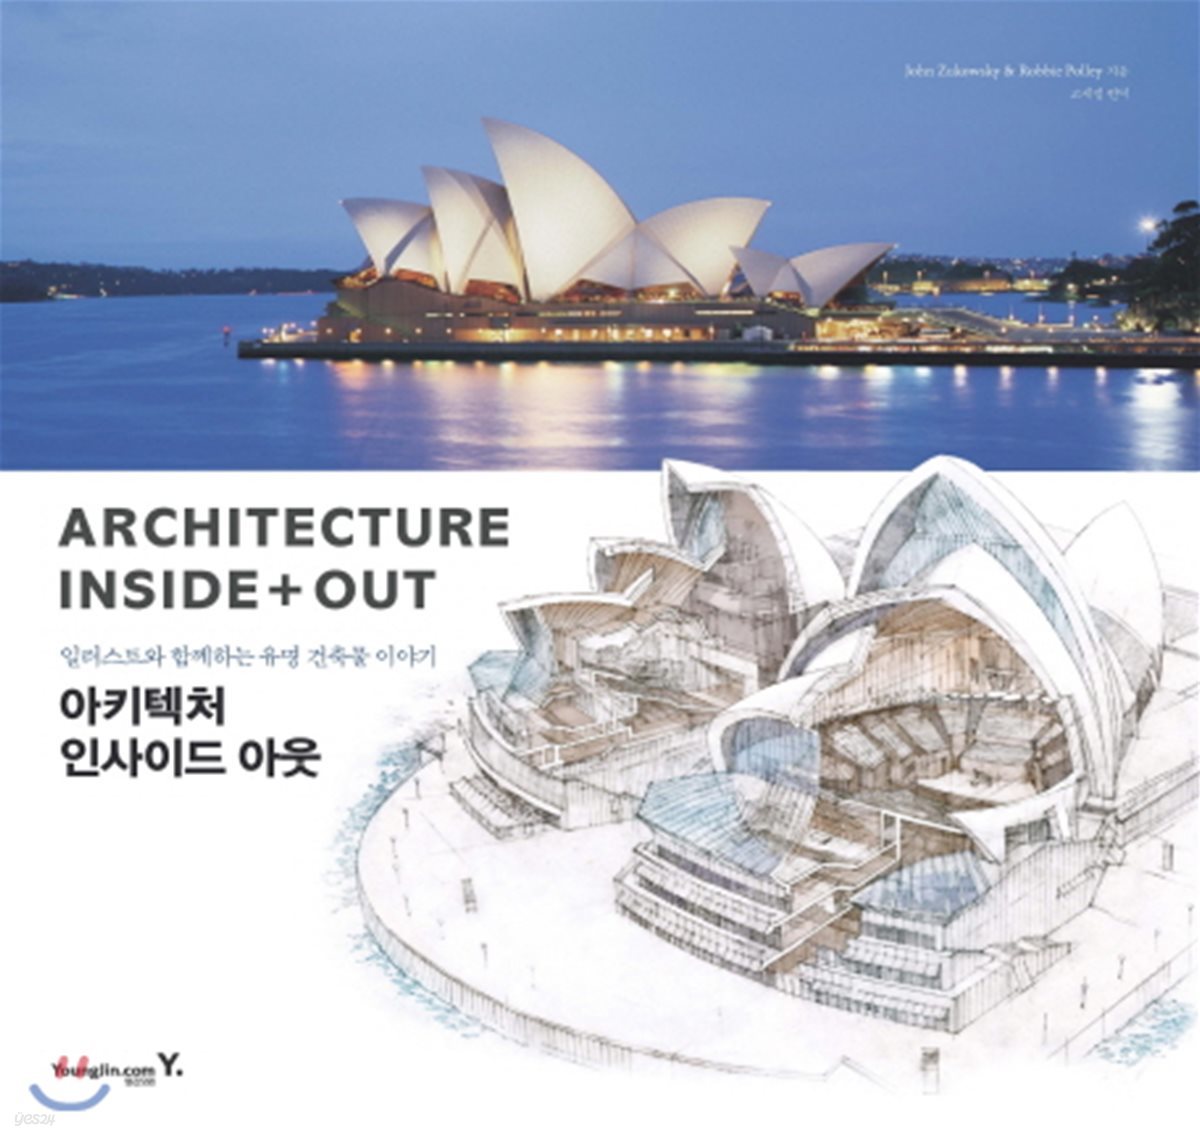 일러스트와 함께하는 유명 건축물 이야기 : Architecture Inside+Out